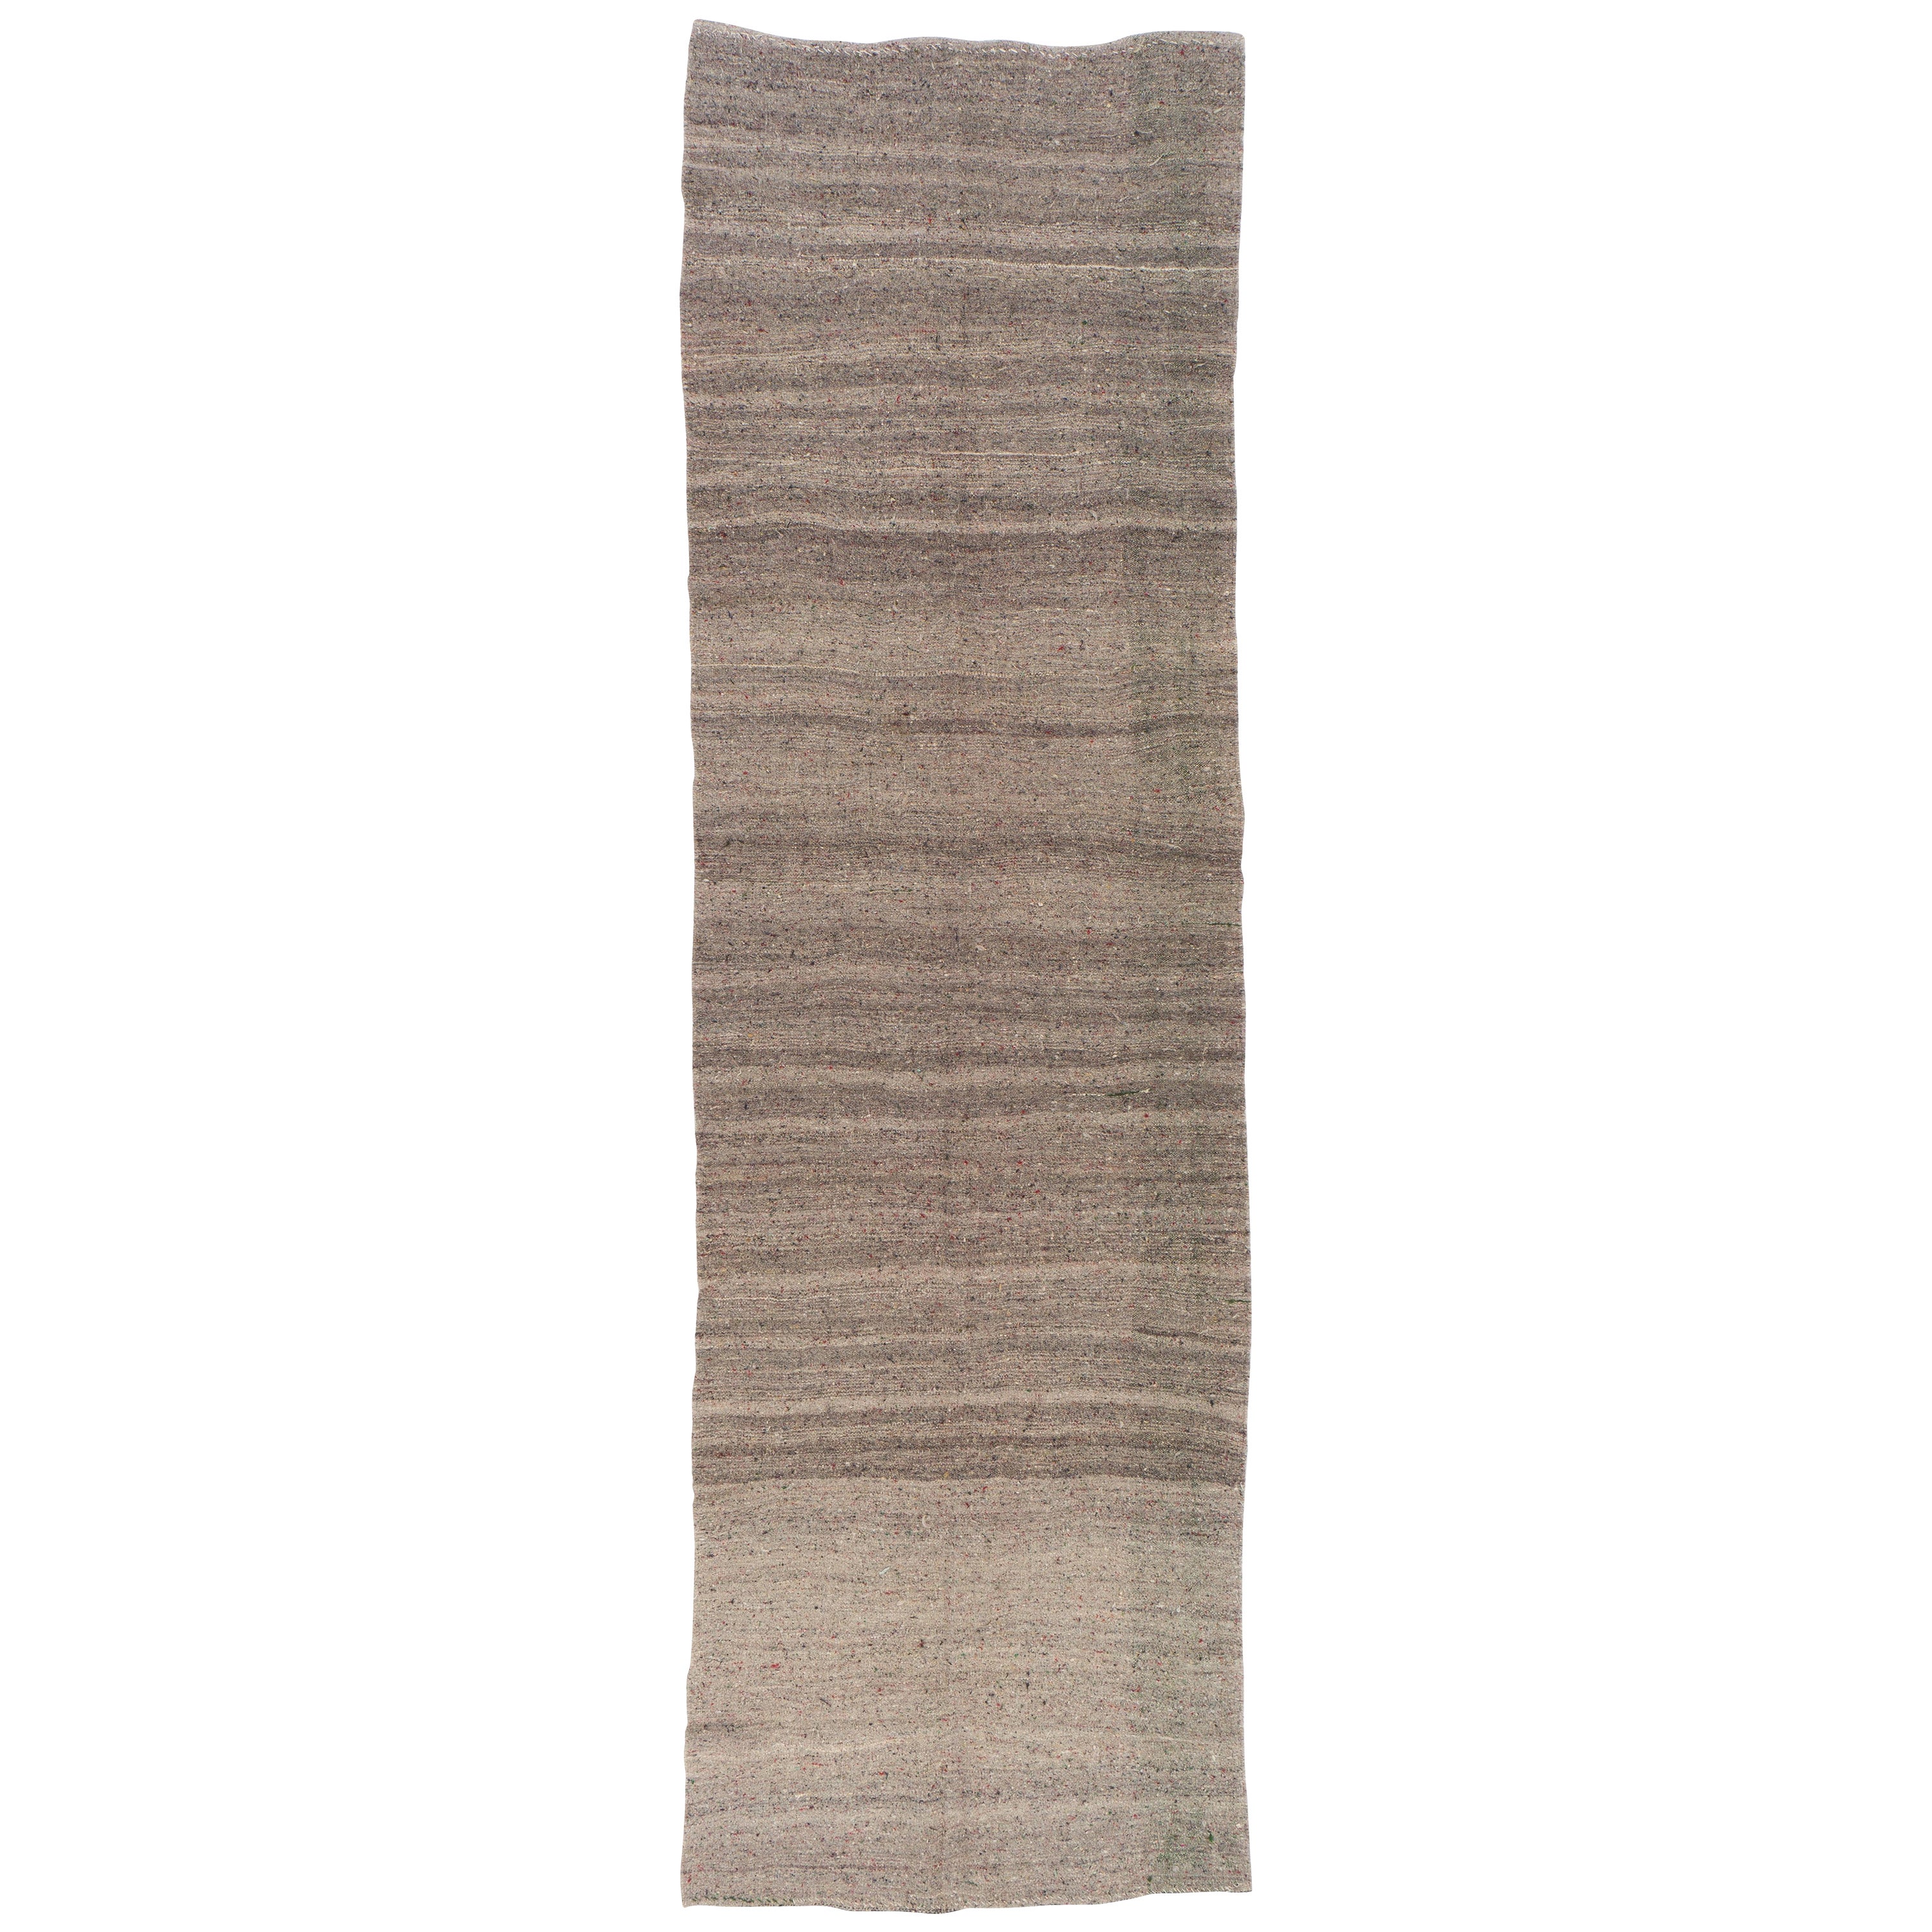 4x13.4 Ft Handgefertigter Läufer Kilim. All Natural Light Brown Wool, Banded 1960s Rug